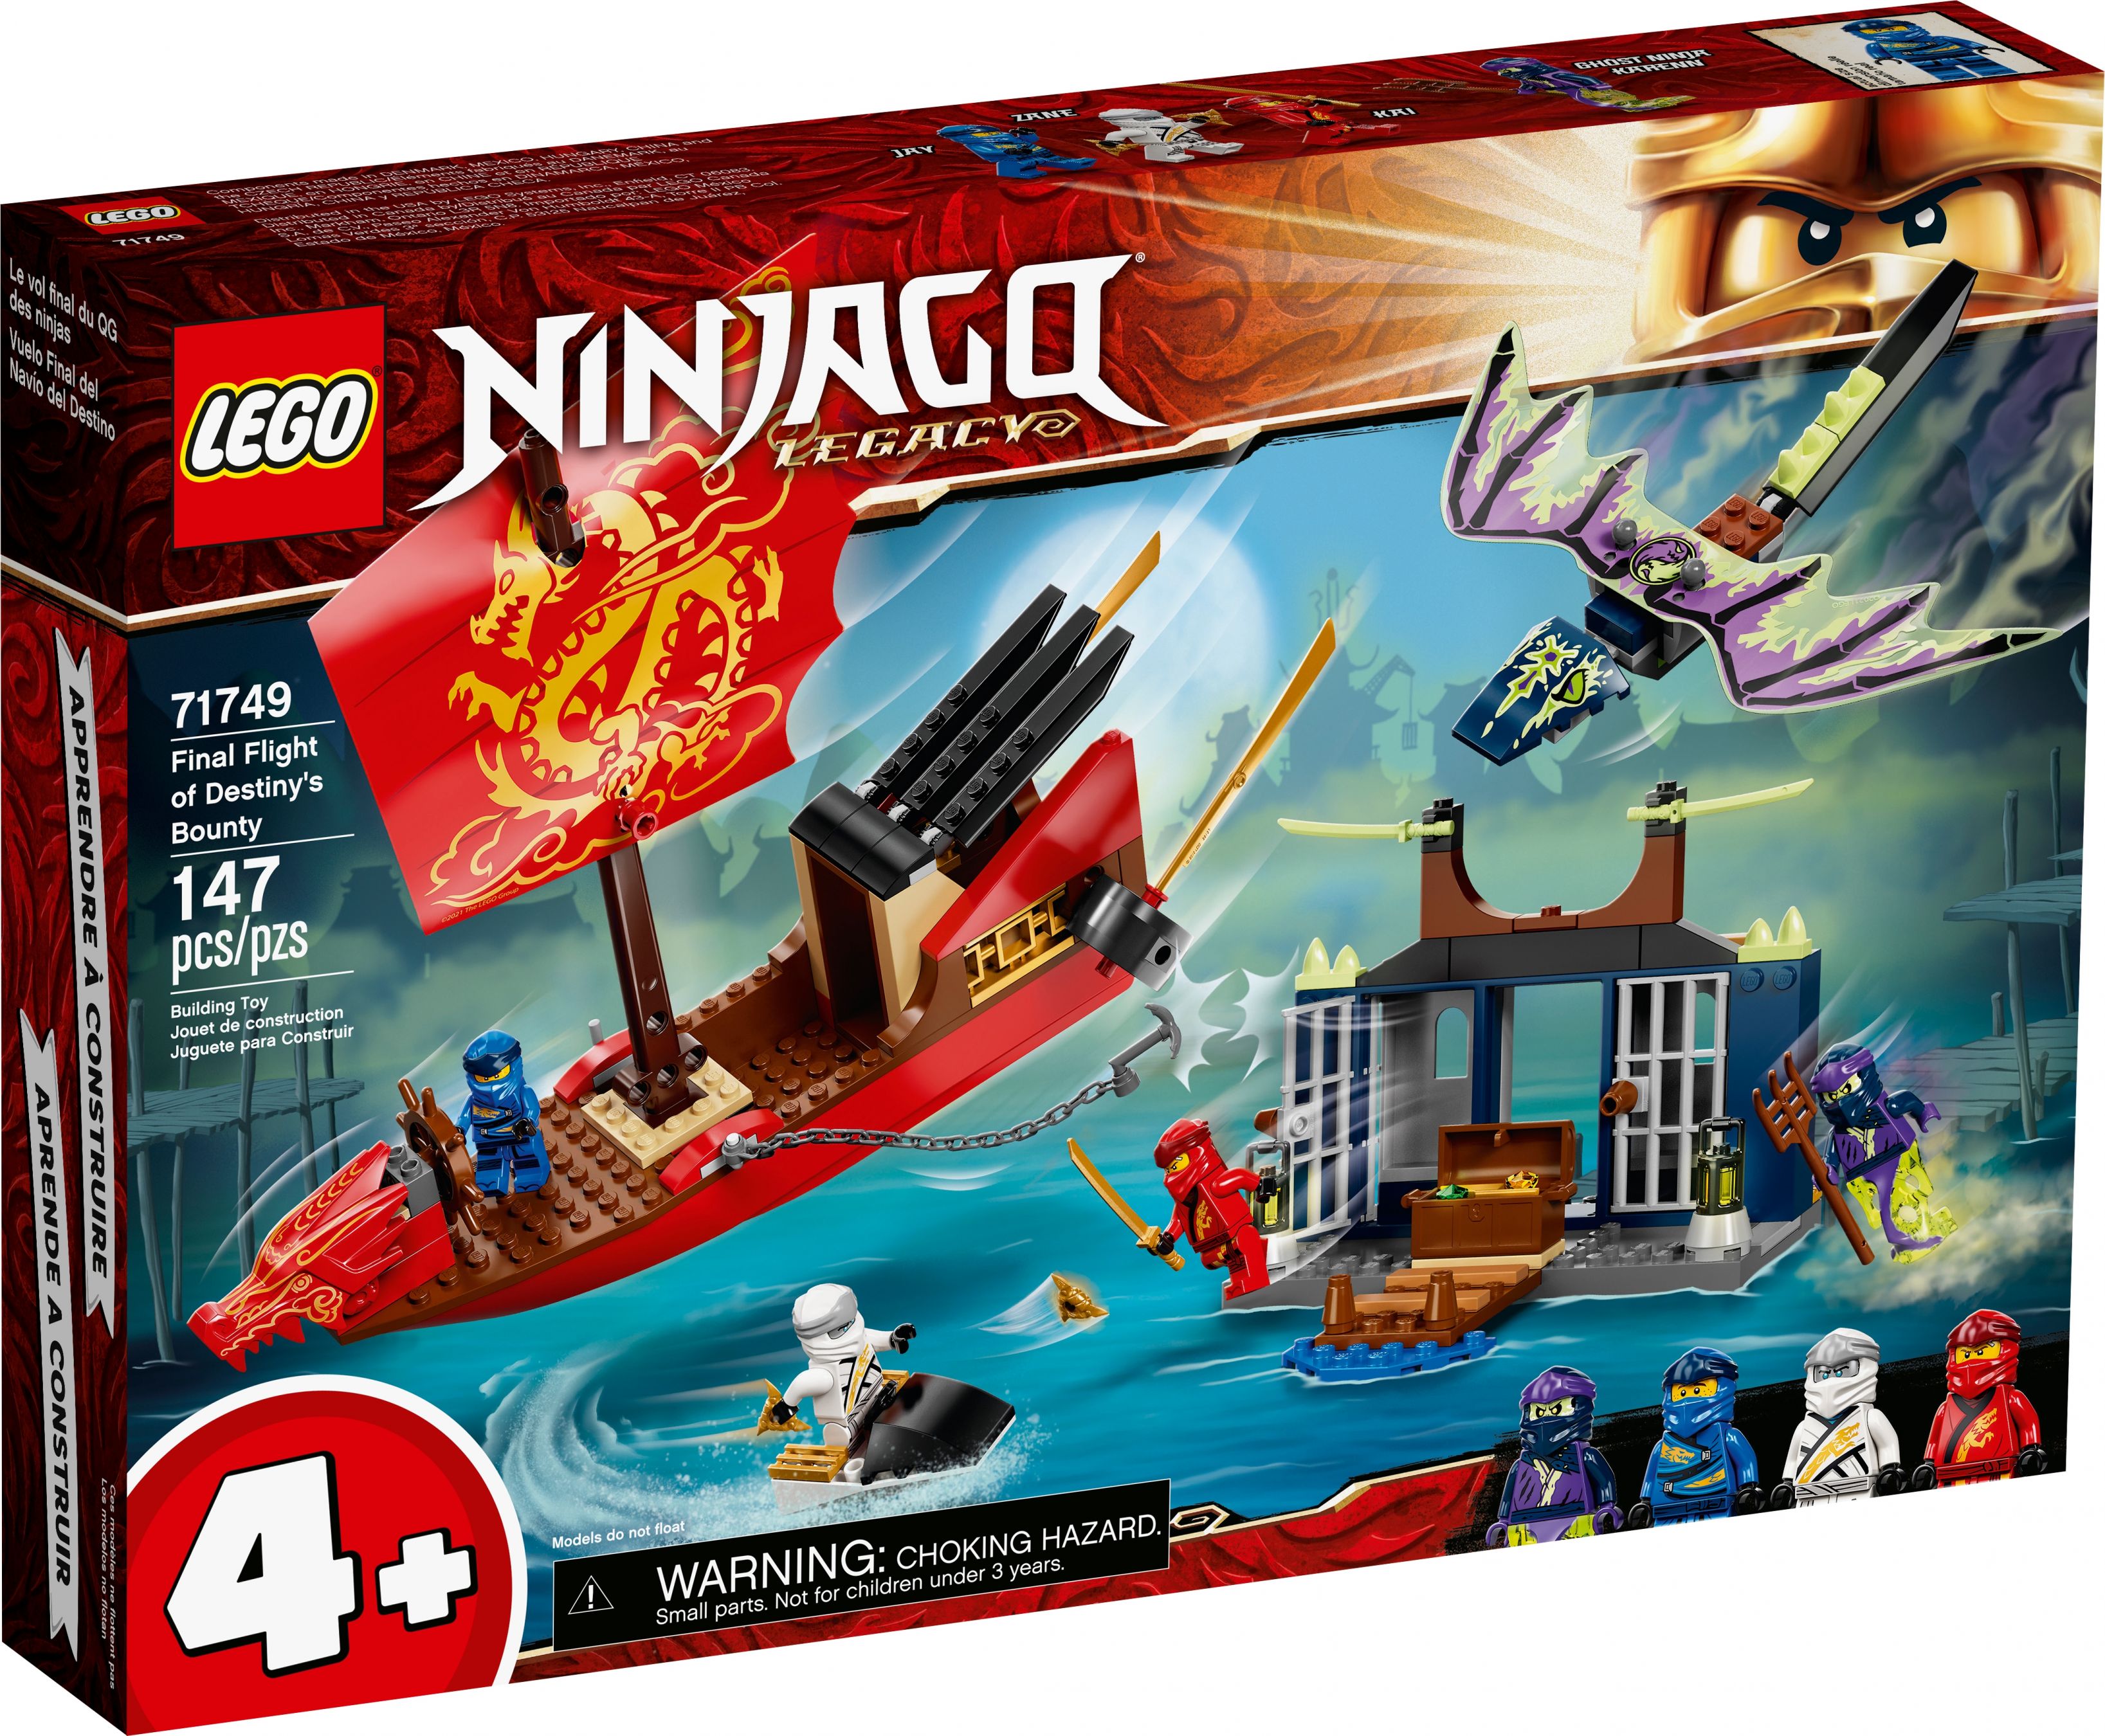 LEGO Ninjago 71749 Flug mit dem Ninja-Flugsegler LEGO_71749_box1_v39.jpg